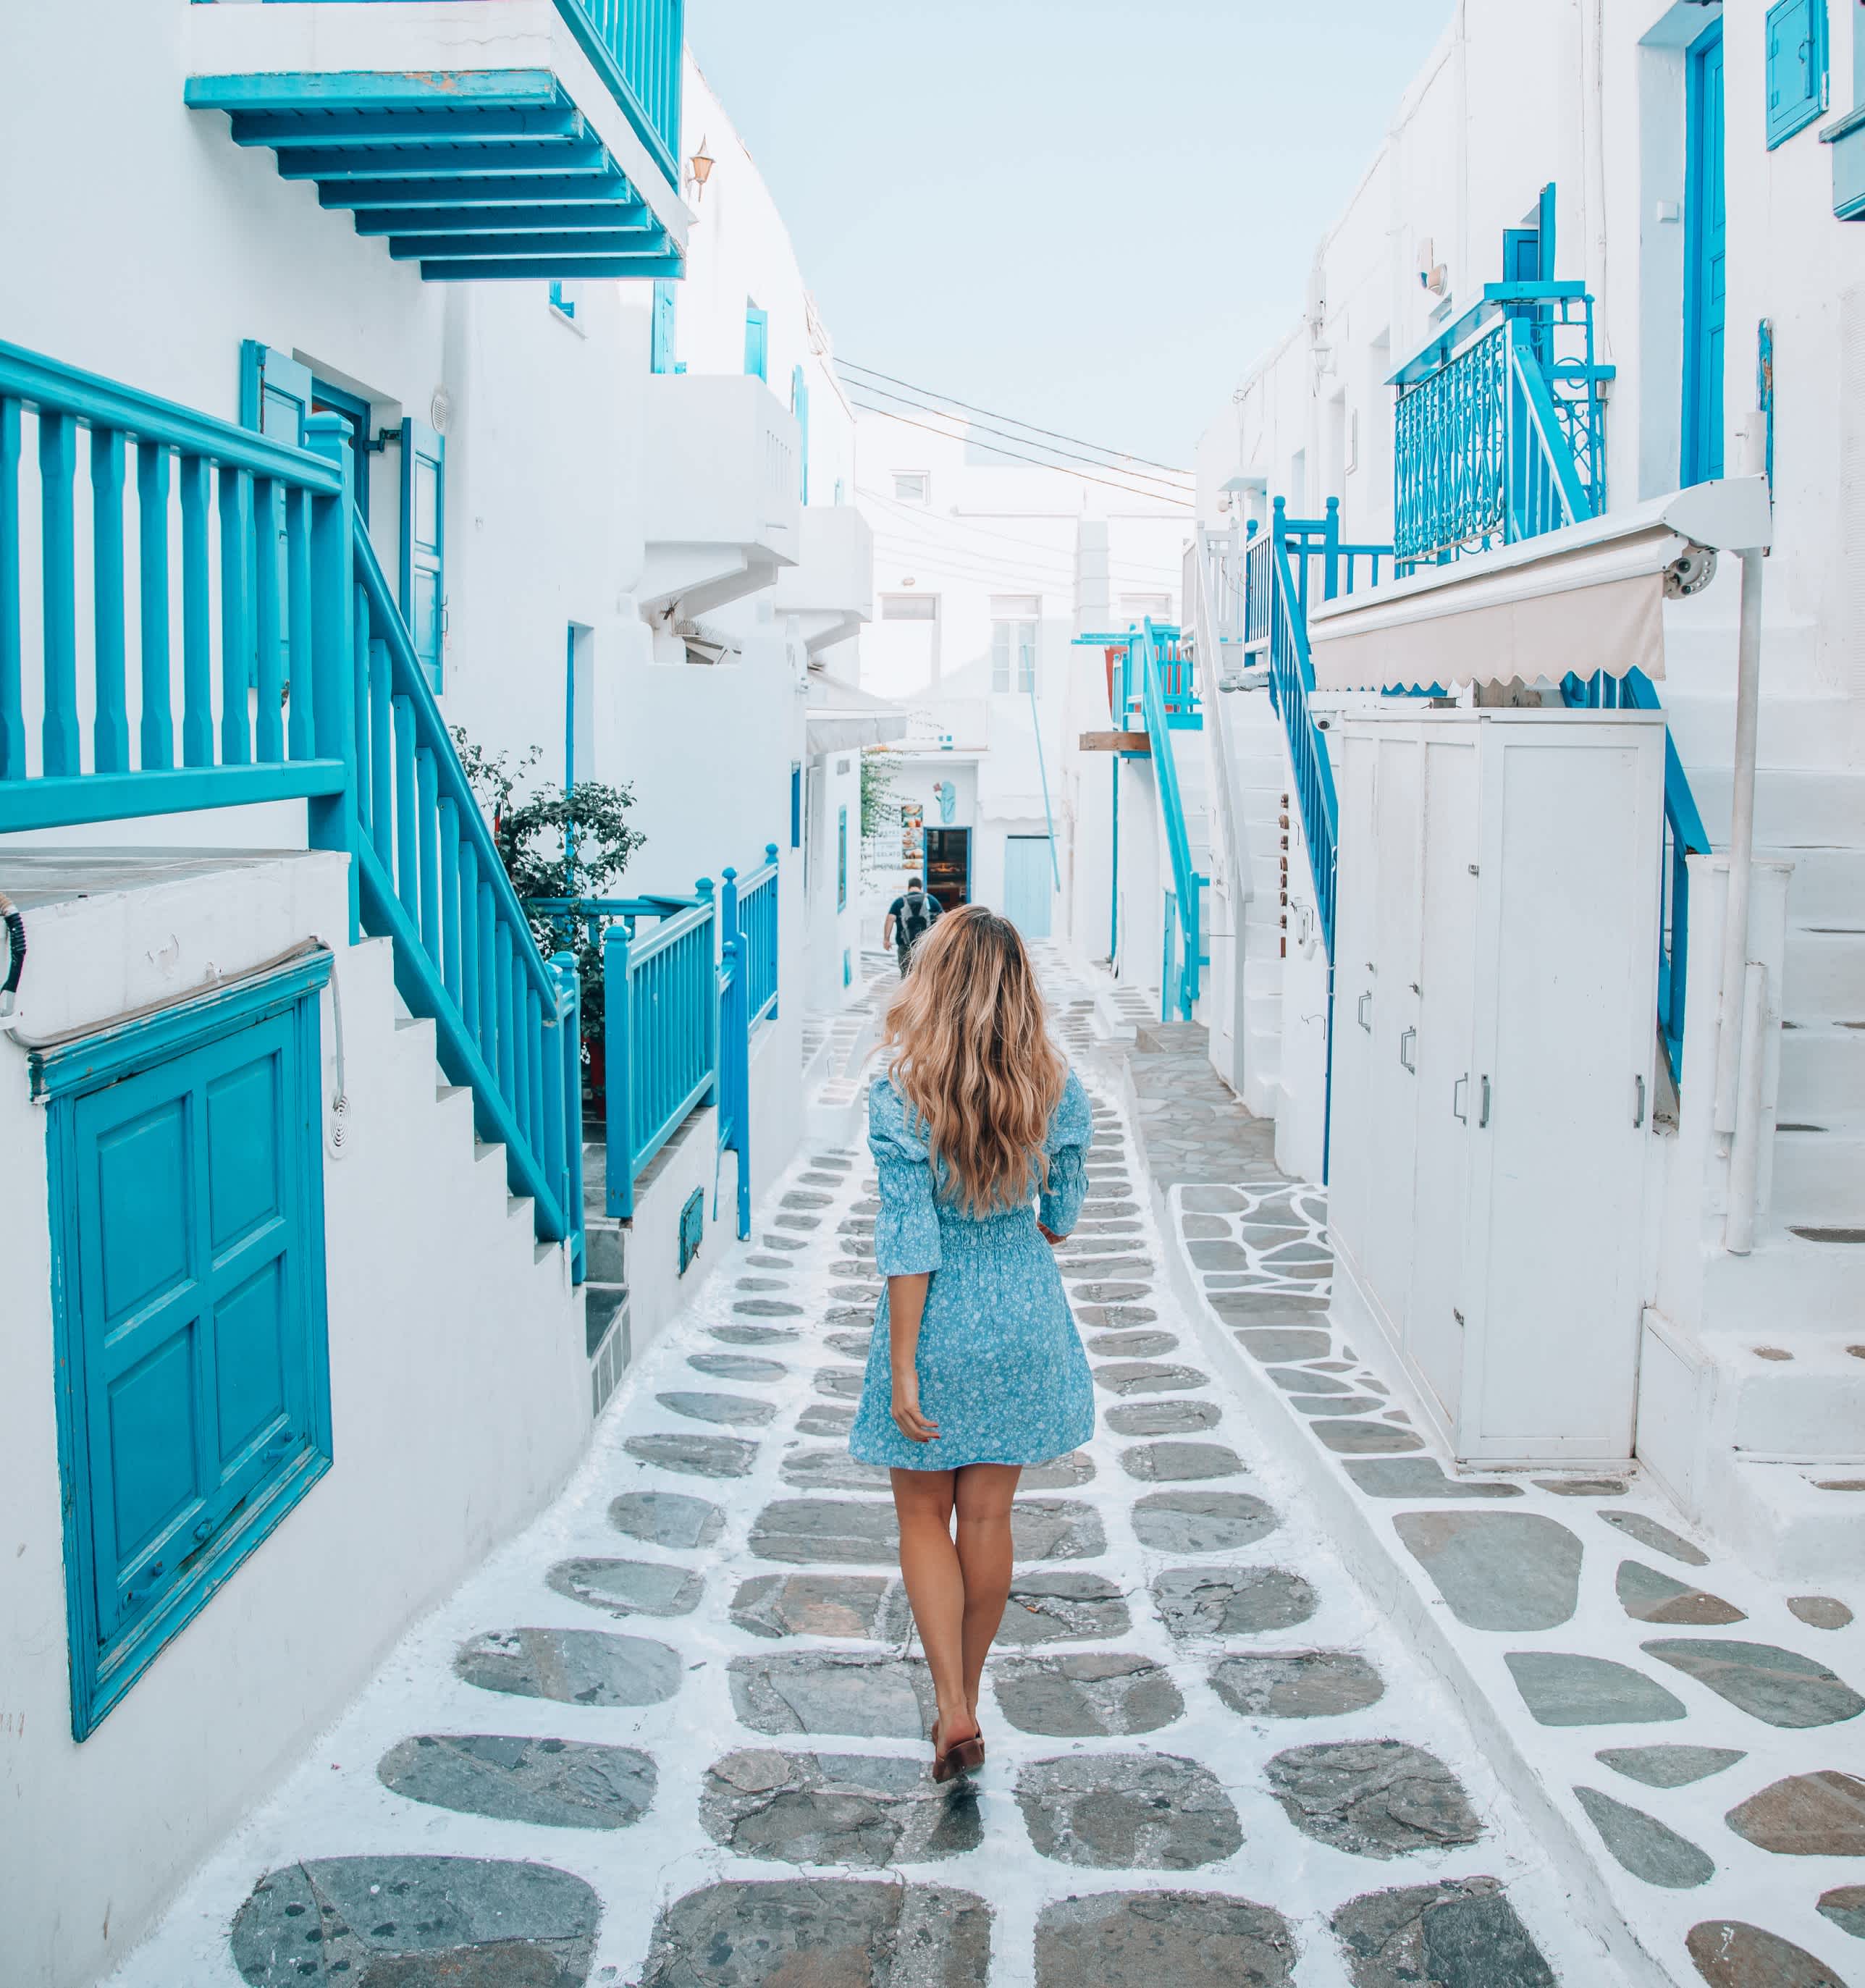 Jeune touriste marchant dans les rues de l'île de Mykonos, Cyclades, Grèce